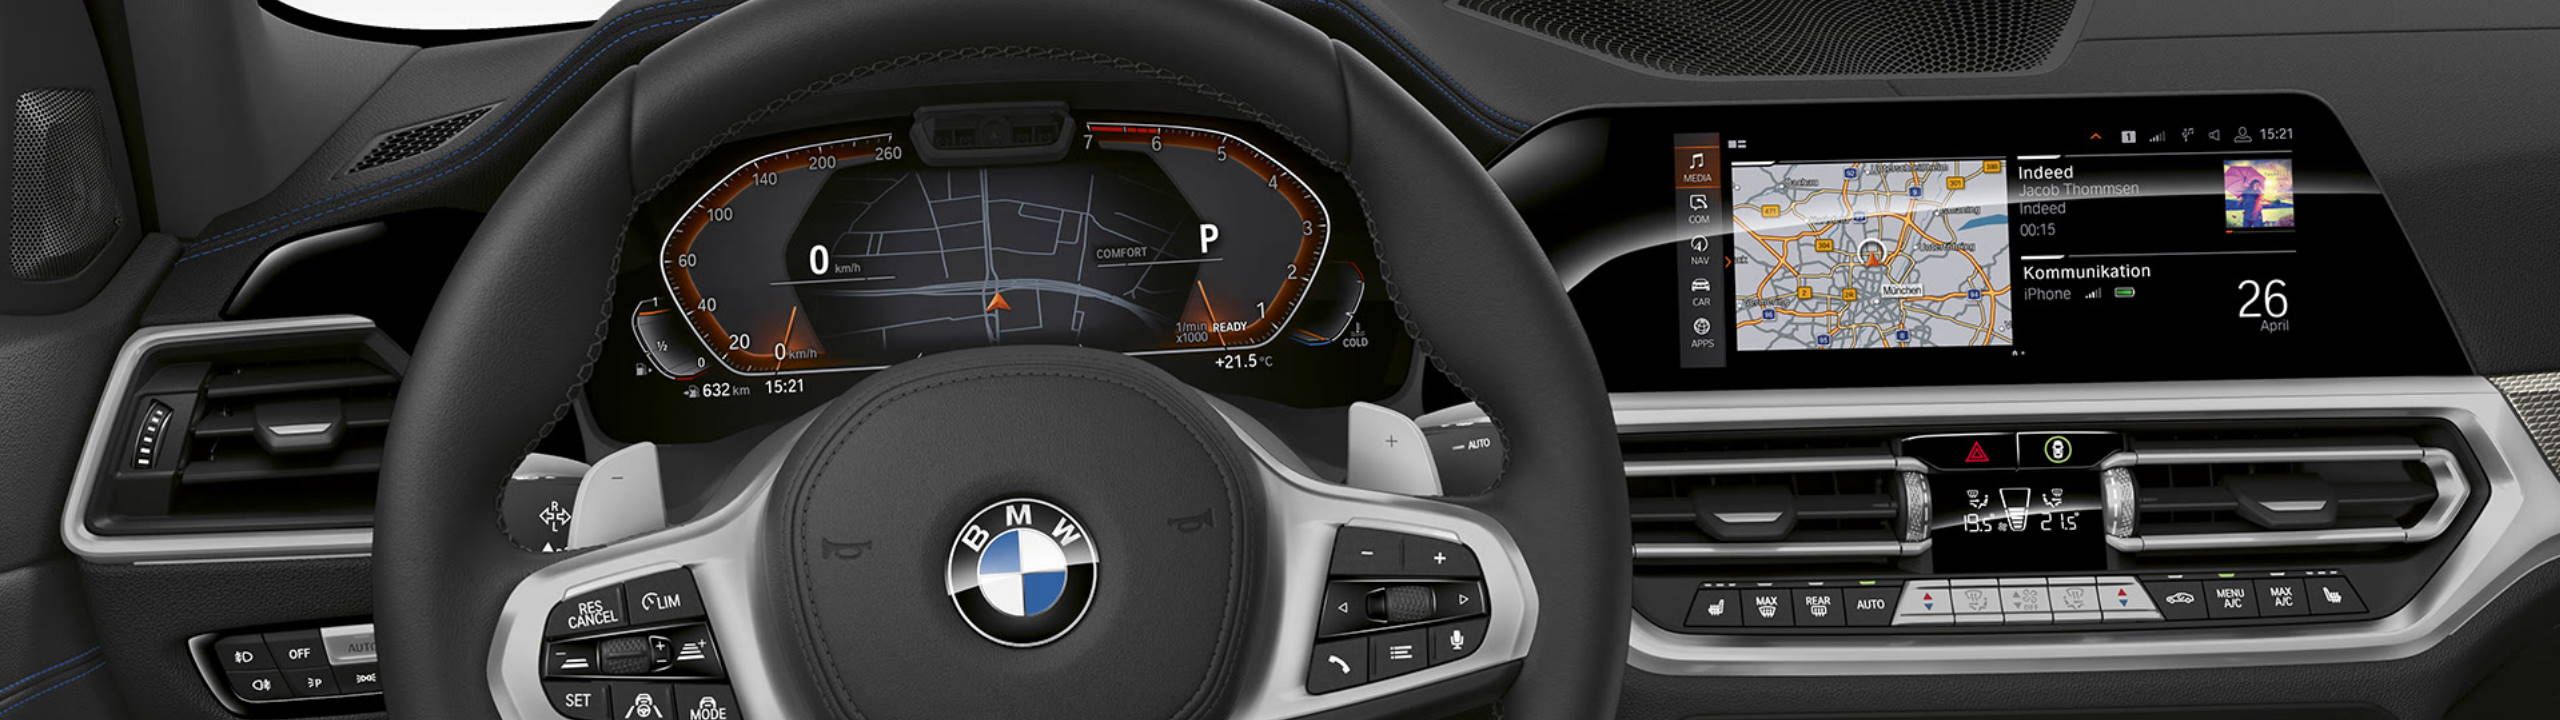 BMW Live Cockpit Professional eines 3er BMW mit Digital Cockpit und Mittelkonsolendisplay